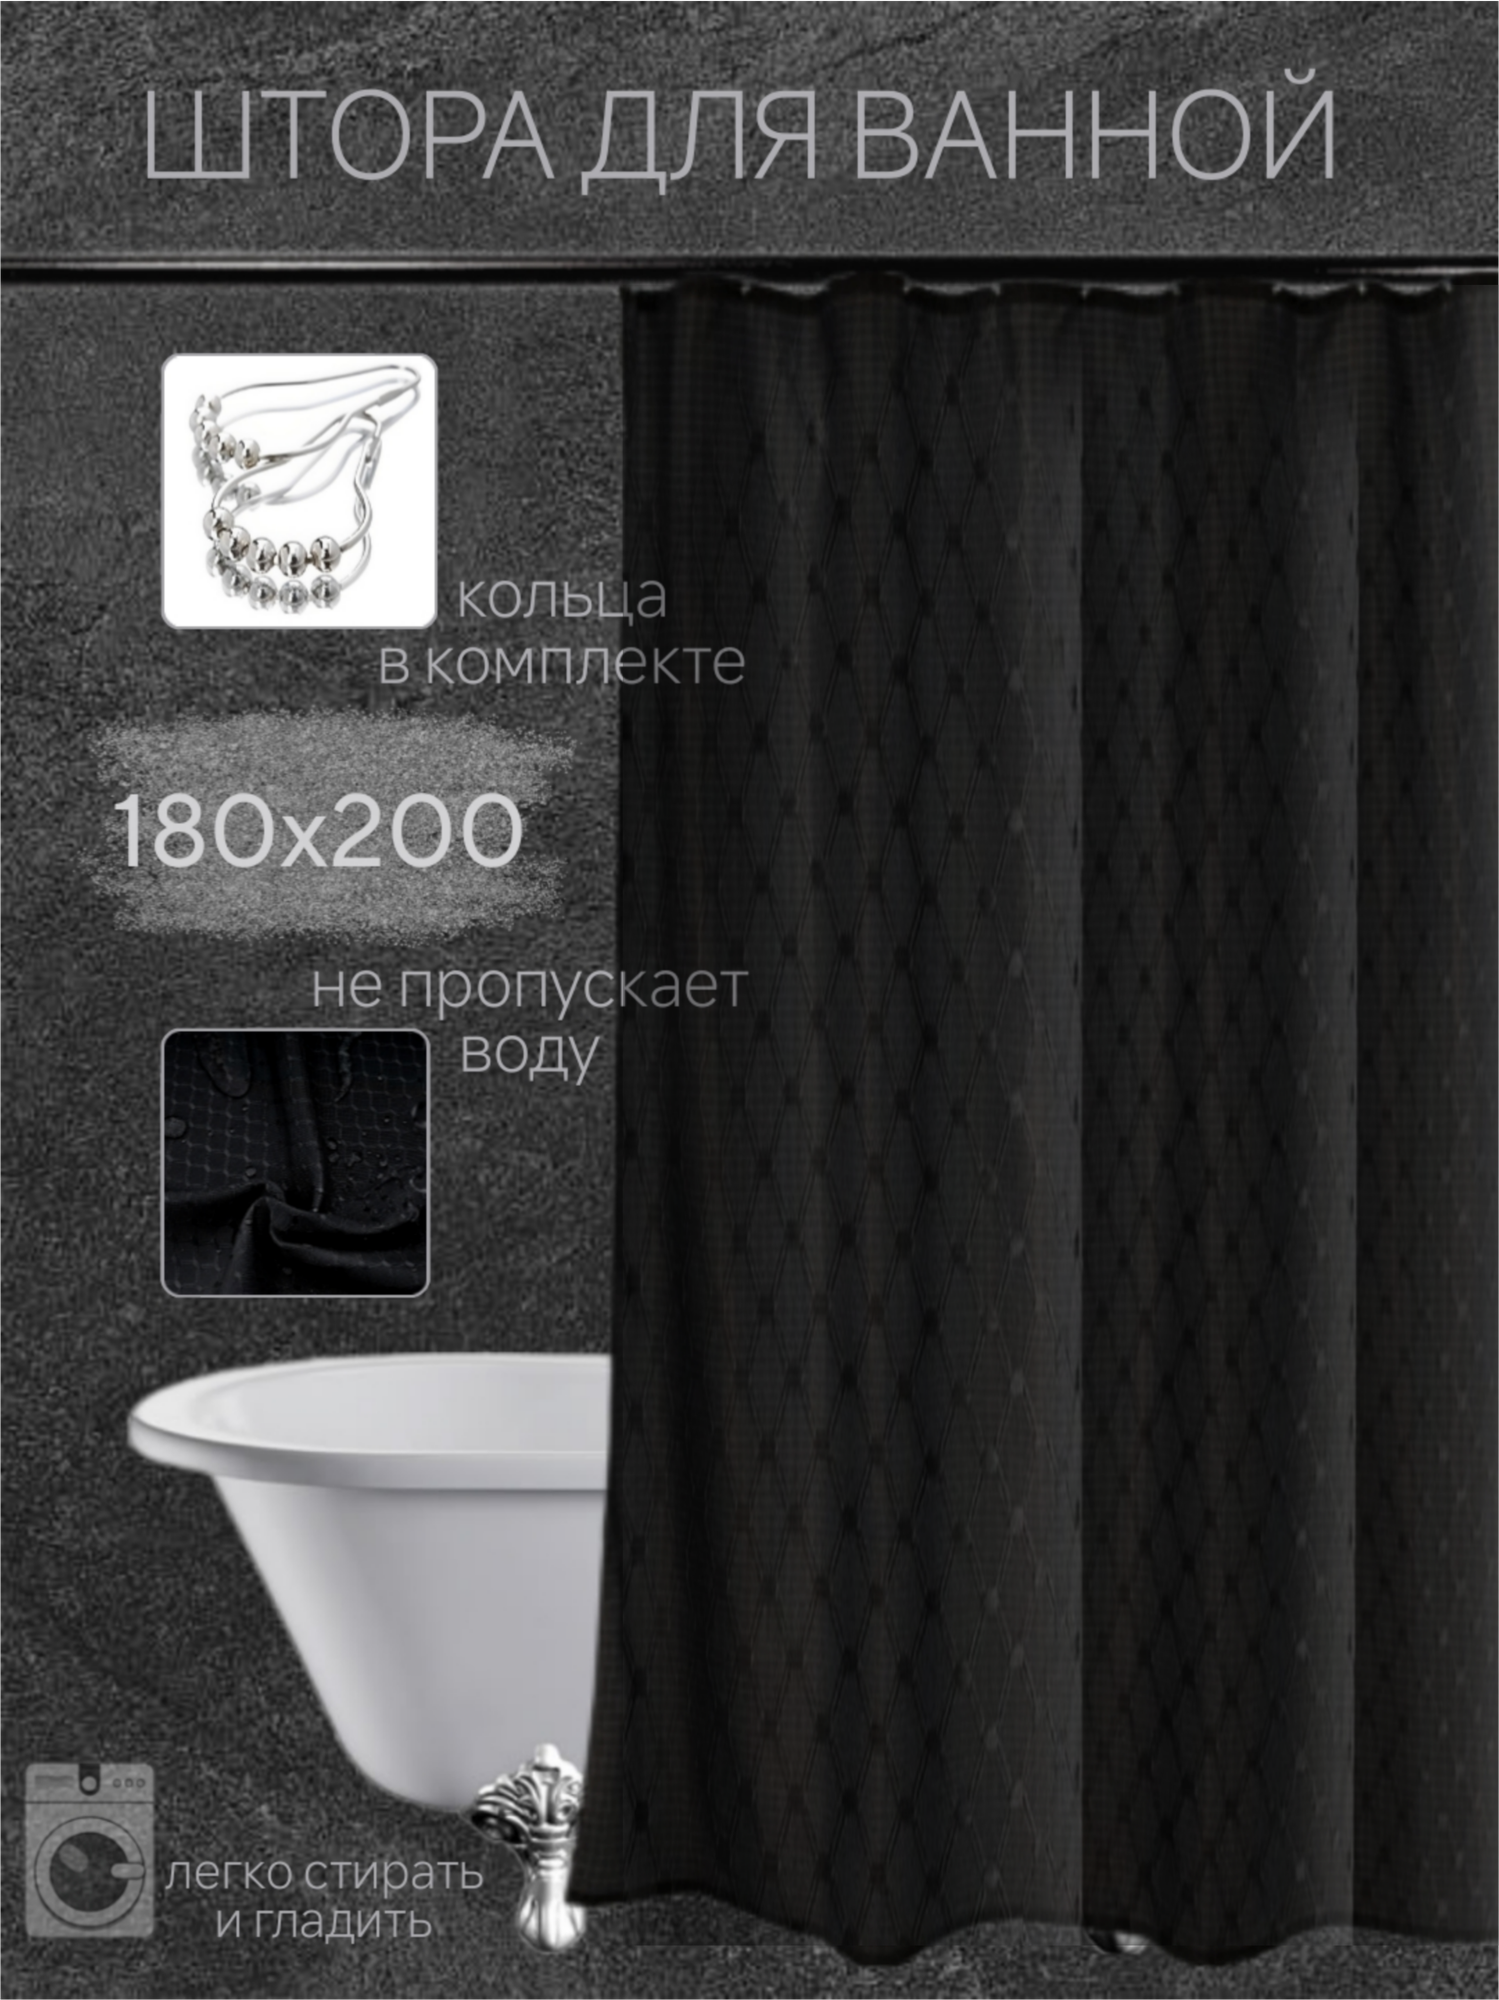 Штора для ванной комнаты тканевая 180х200 см, черная